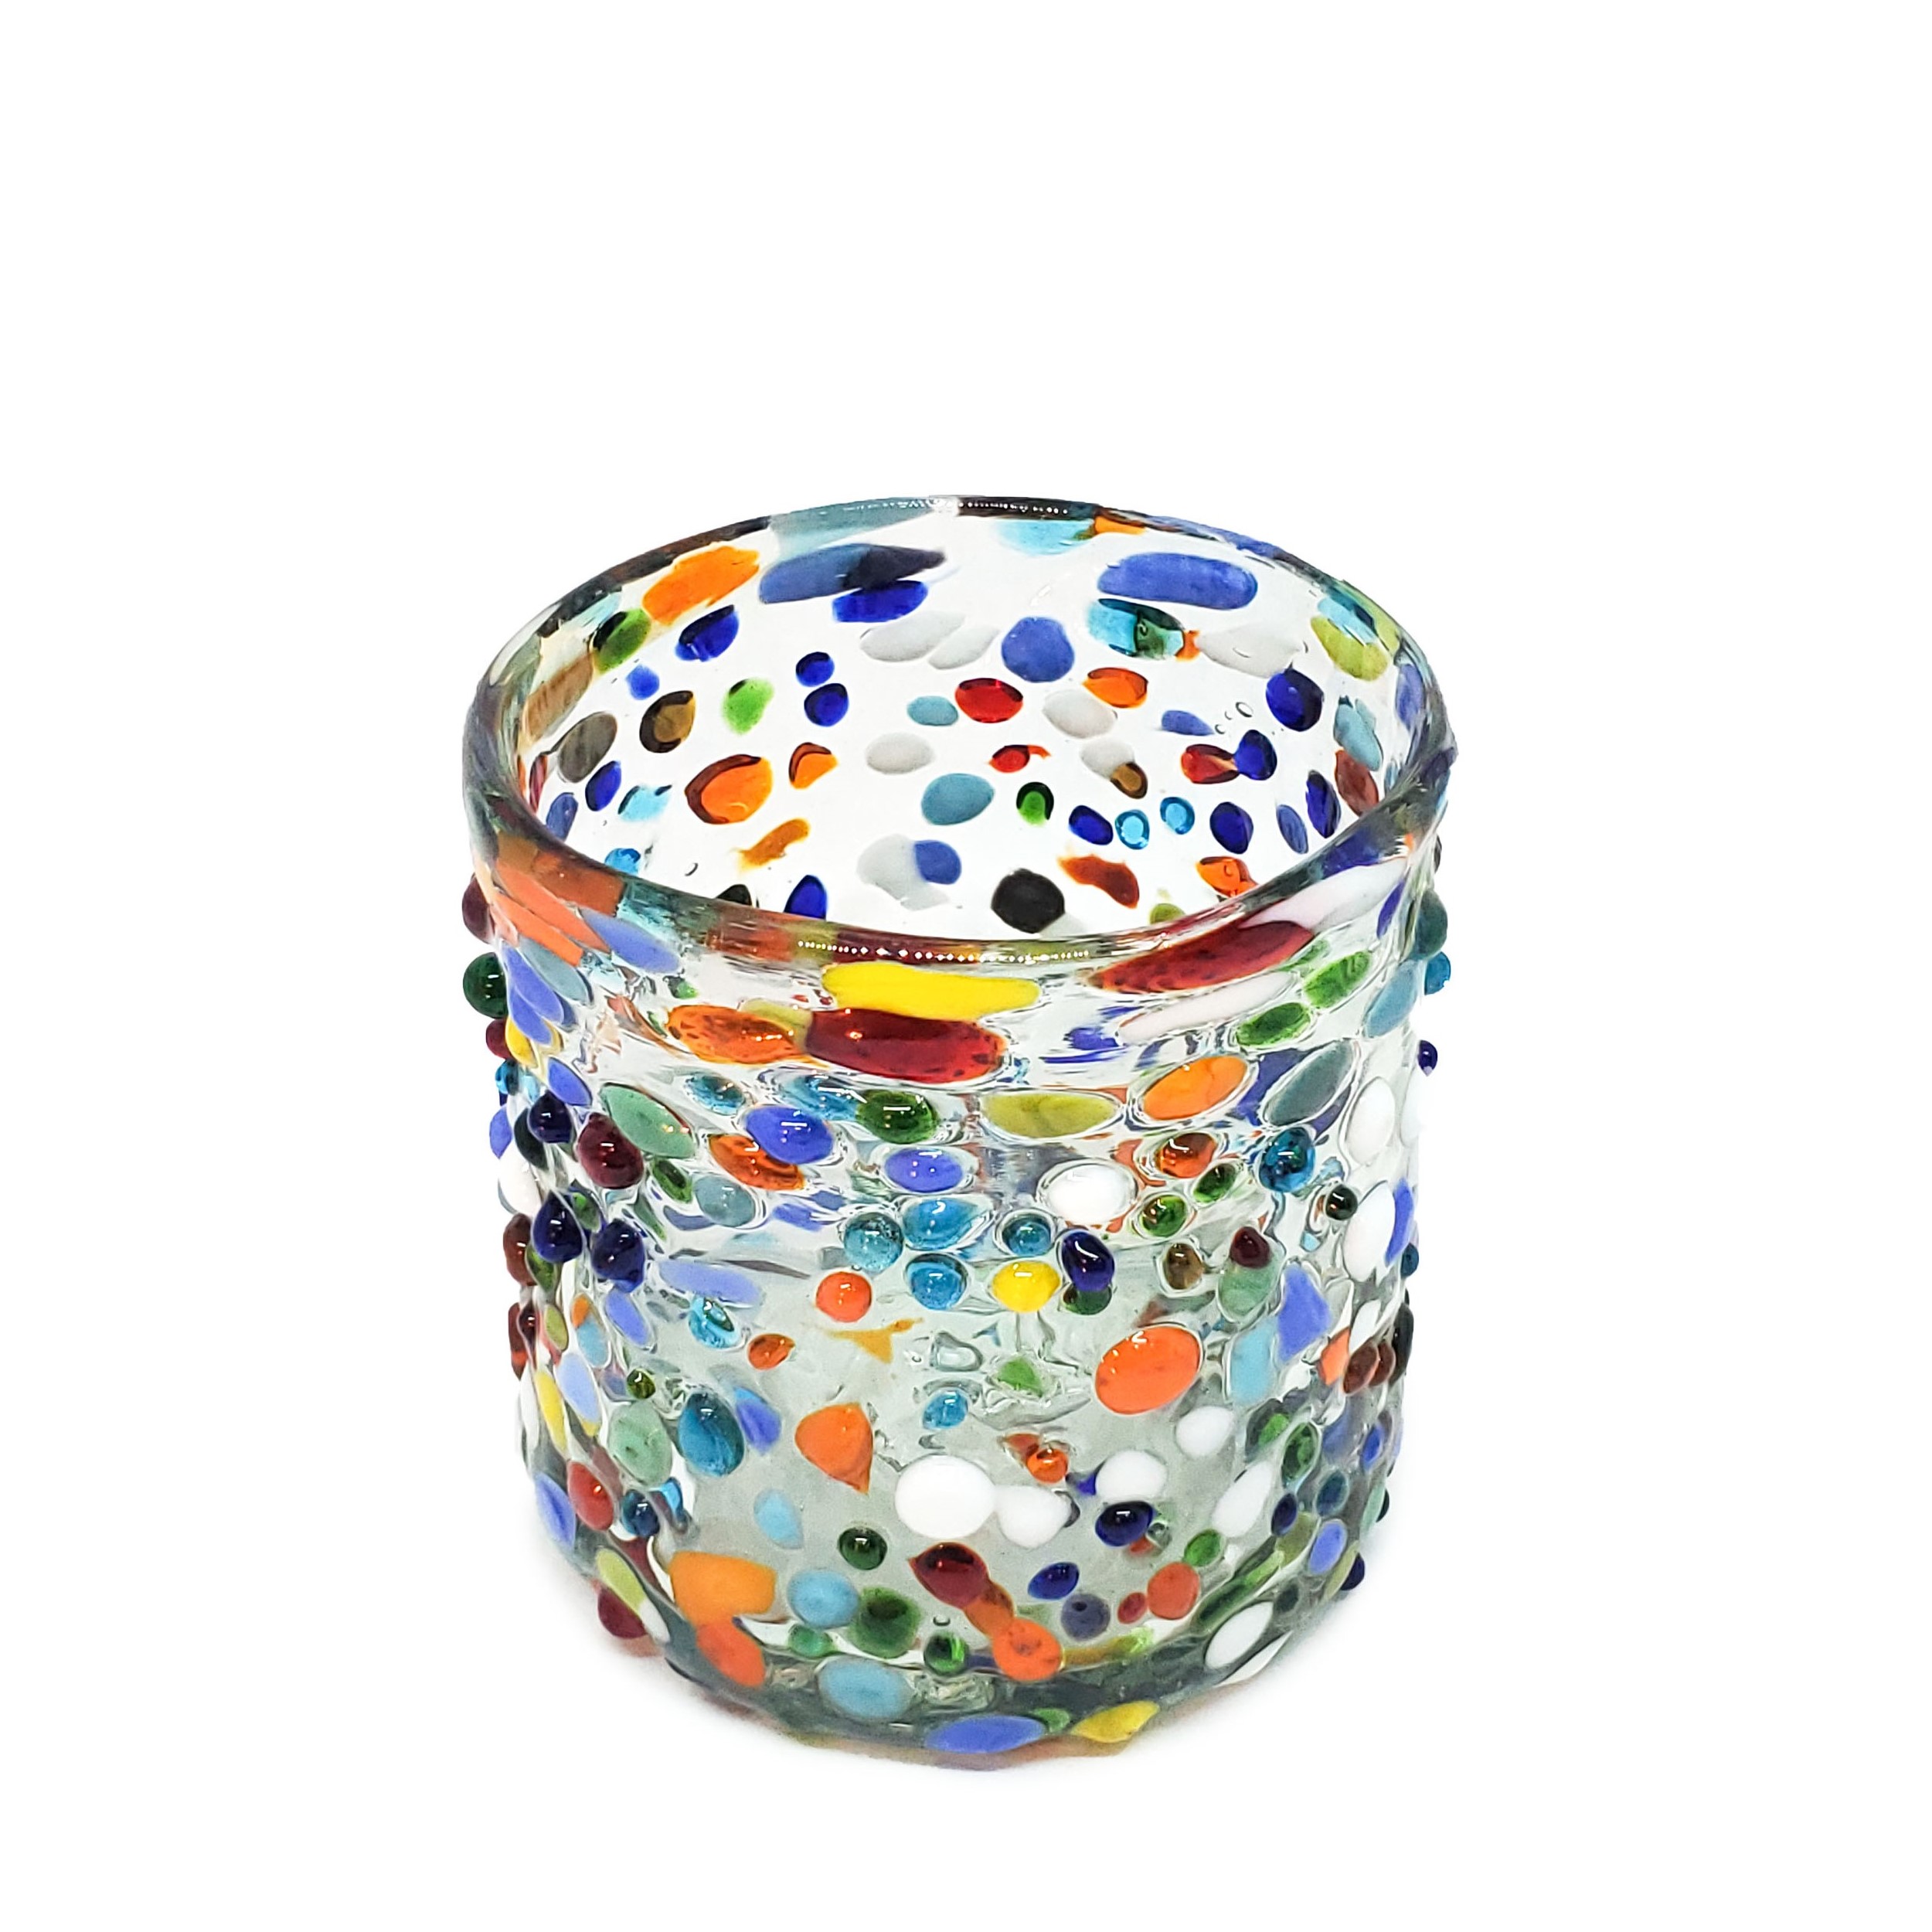 Estilo Confeti al Mayoreo / vasos DOF 8oz Confeti granizado / Deje entrar a la primavera en su casa con éste colorido juego de vasos. El decorado con vidrio multicolor los hace resaltar en cualquier lugar.